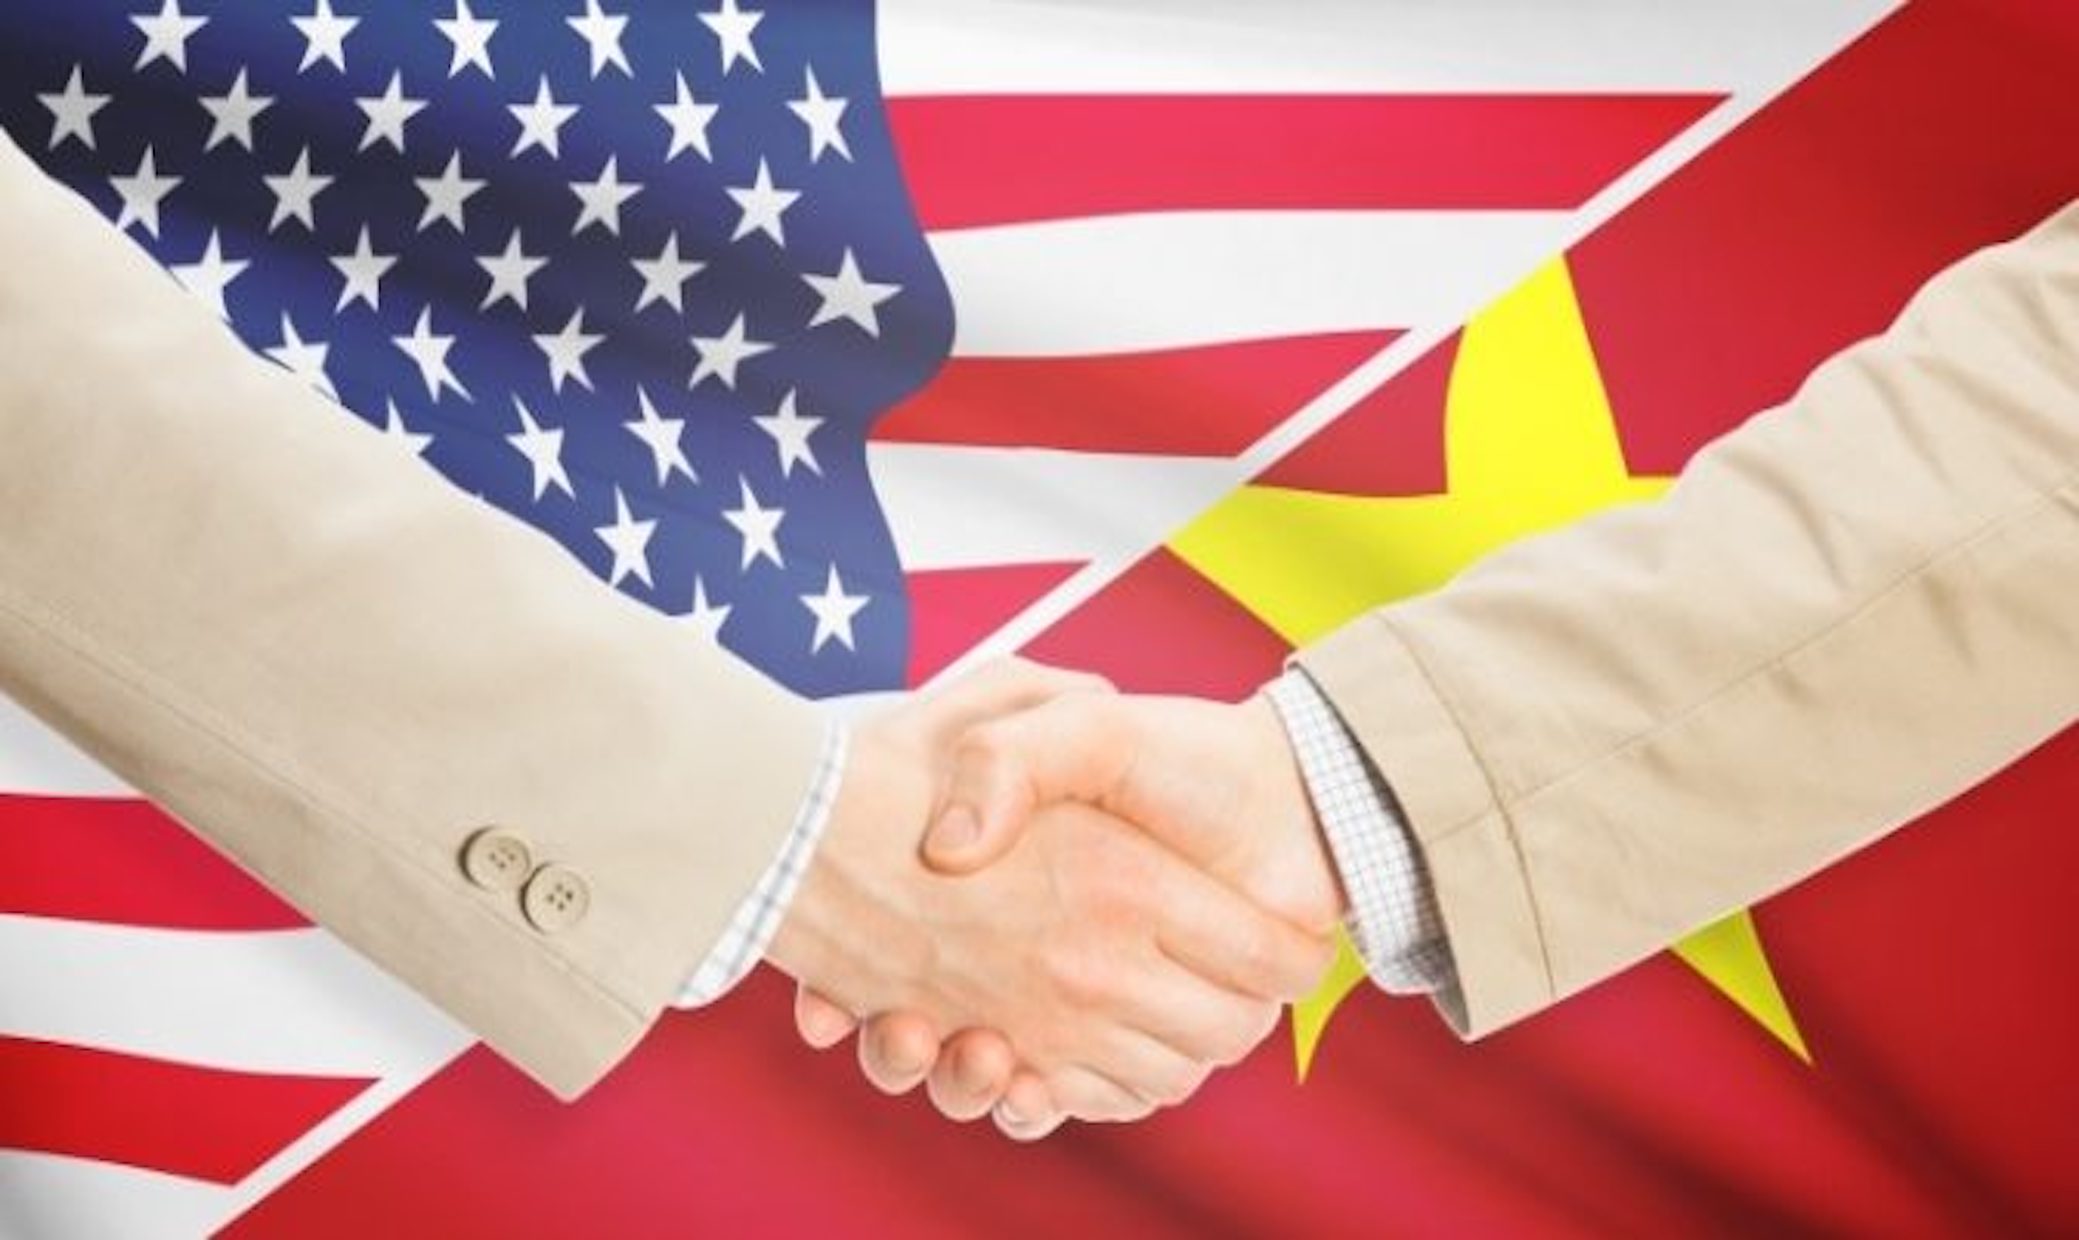 Hiệp định thương mại Việt Nam - Hoa Kì là gì? Nội dung Hiệp định thương mại Việt Mỹ?